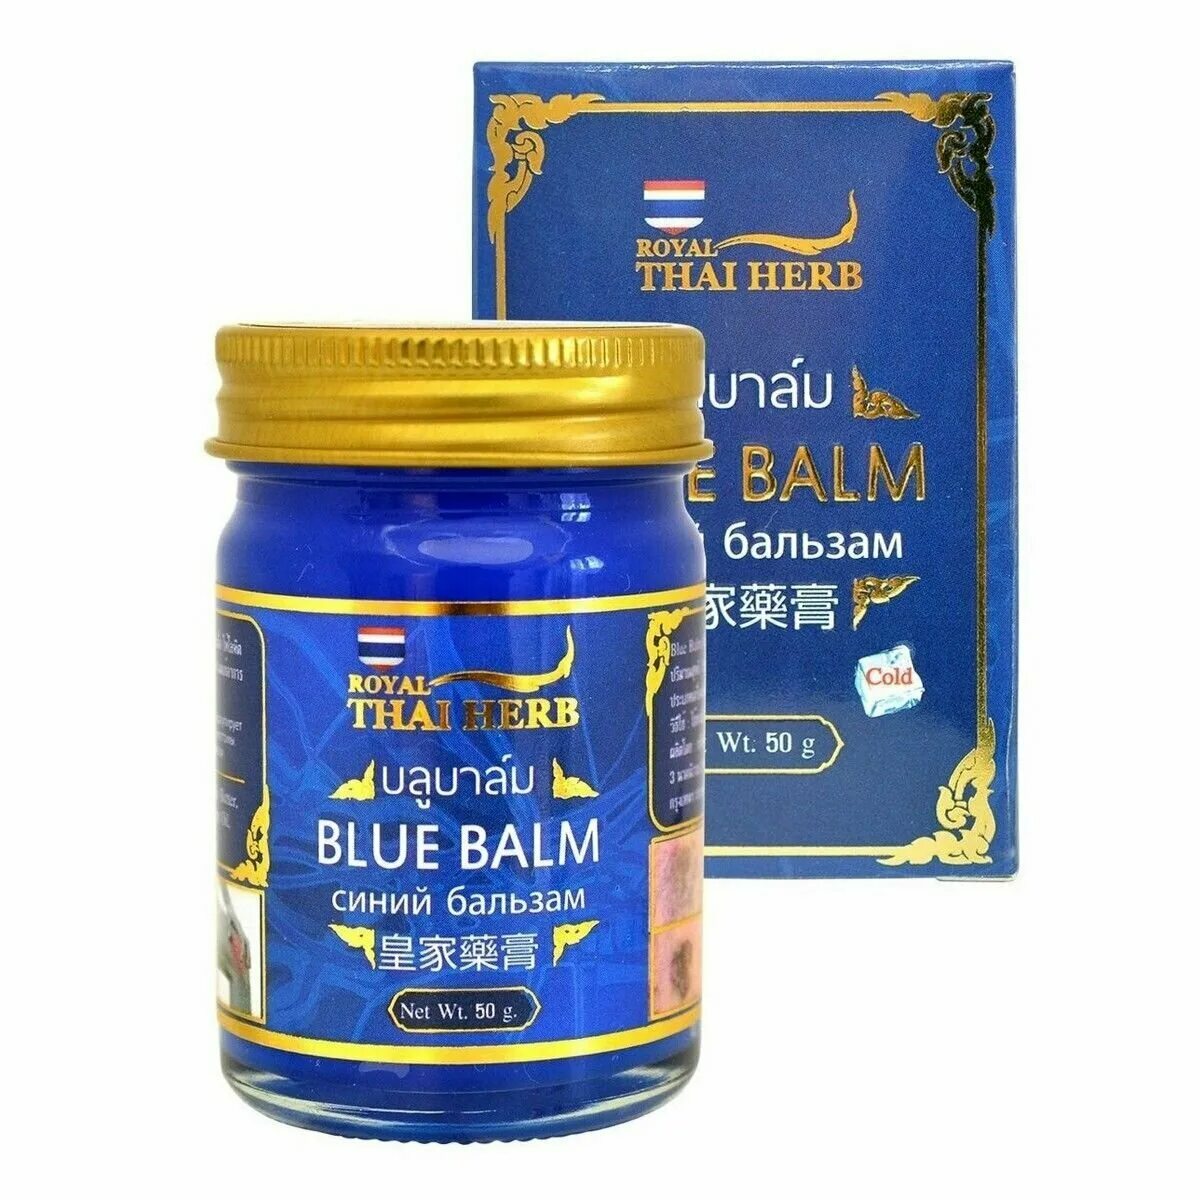 Тайский синий бальзам — Royal Thai Herb. Blue Balm синий бальзам. Бальзам Королевская Кобра Royal Thai Herb 50 гр. Blue Balm синий бальзам Wattana Herb. Тайская звездочка